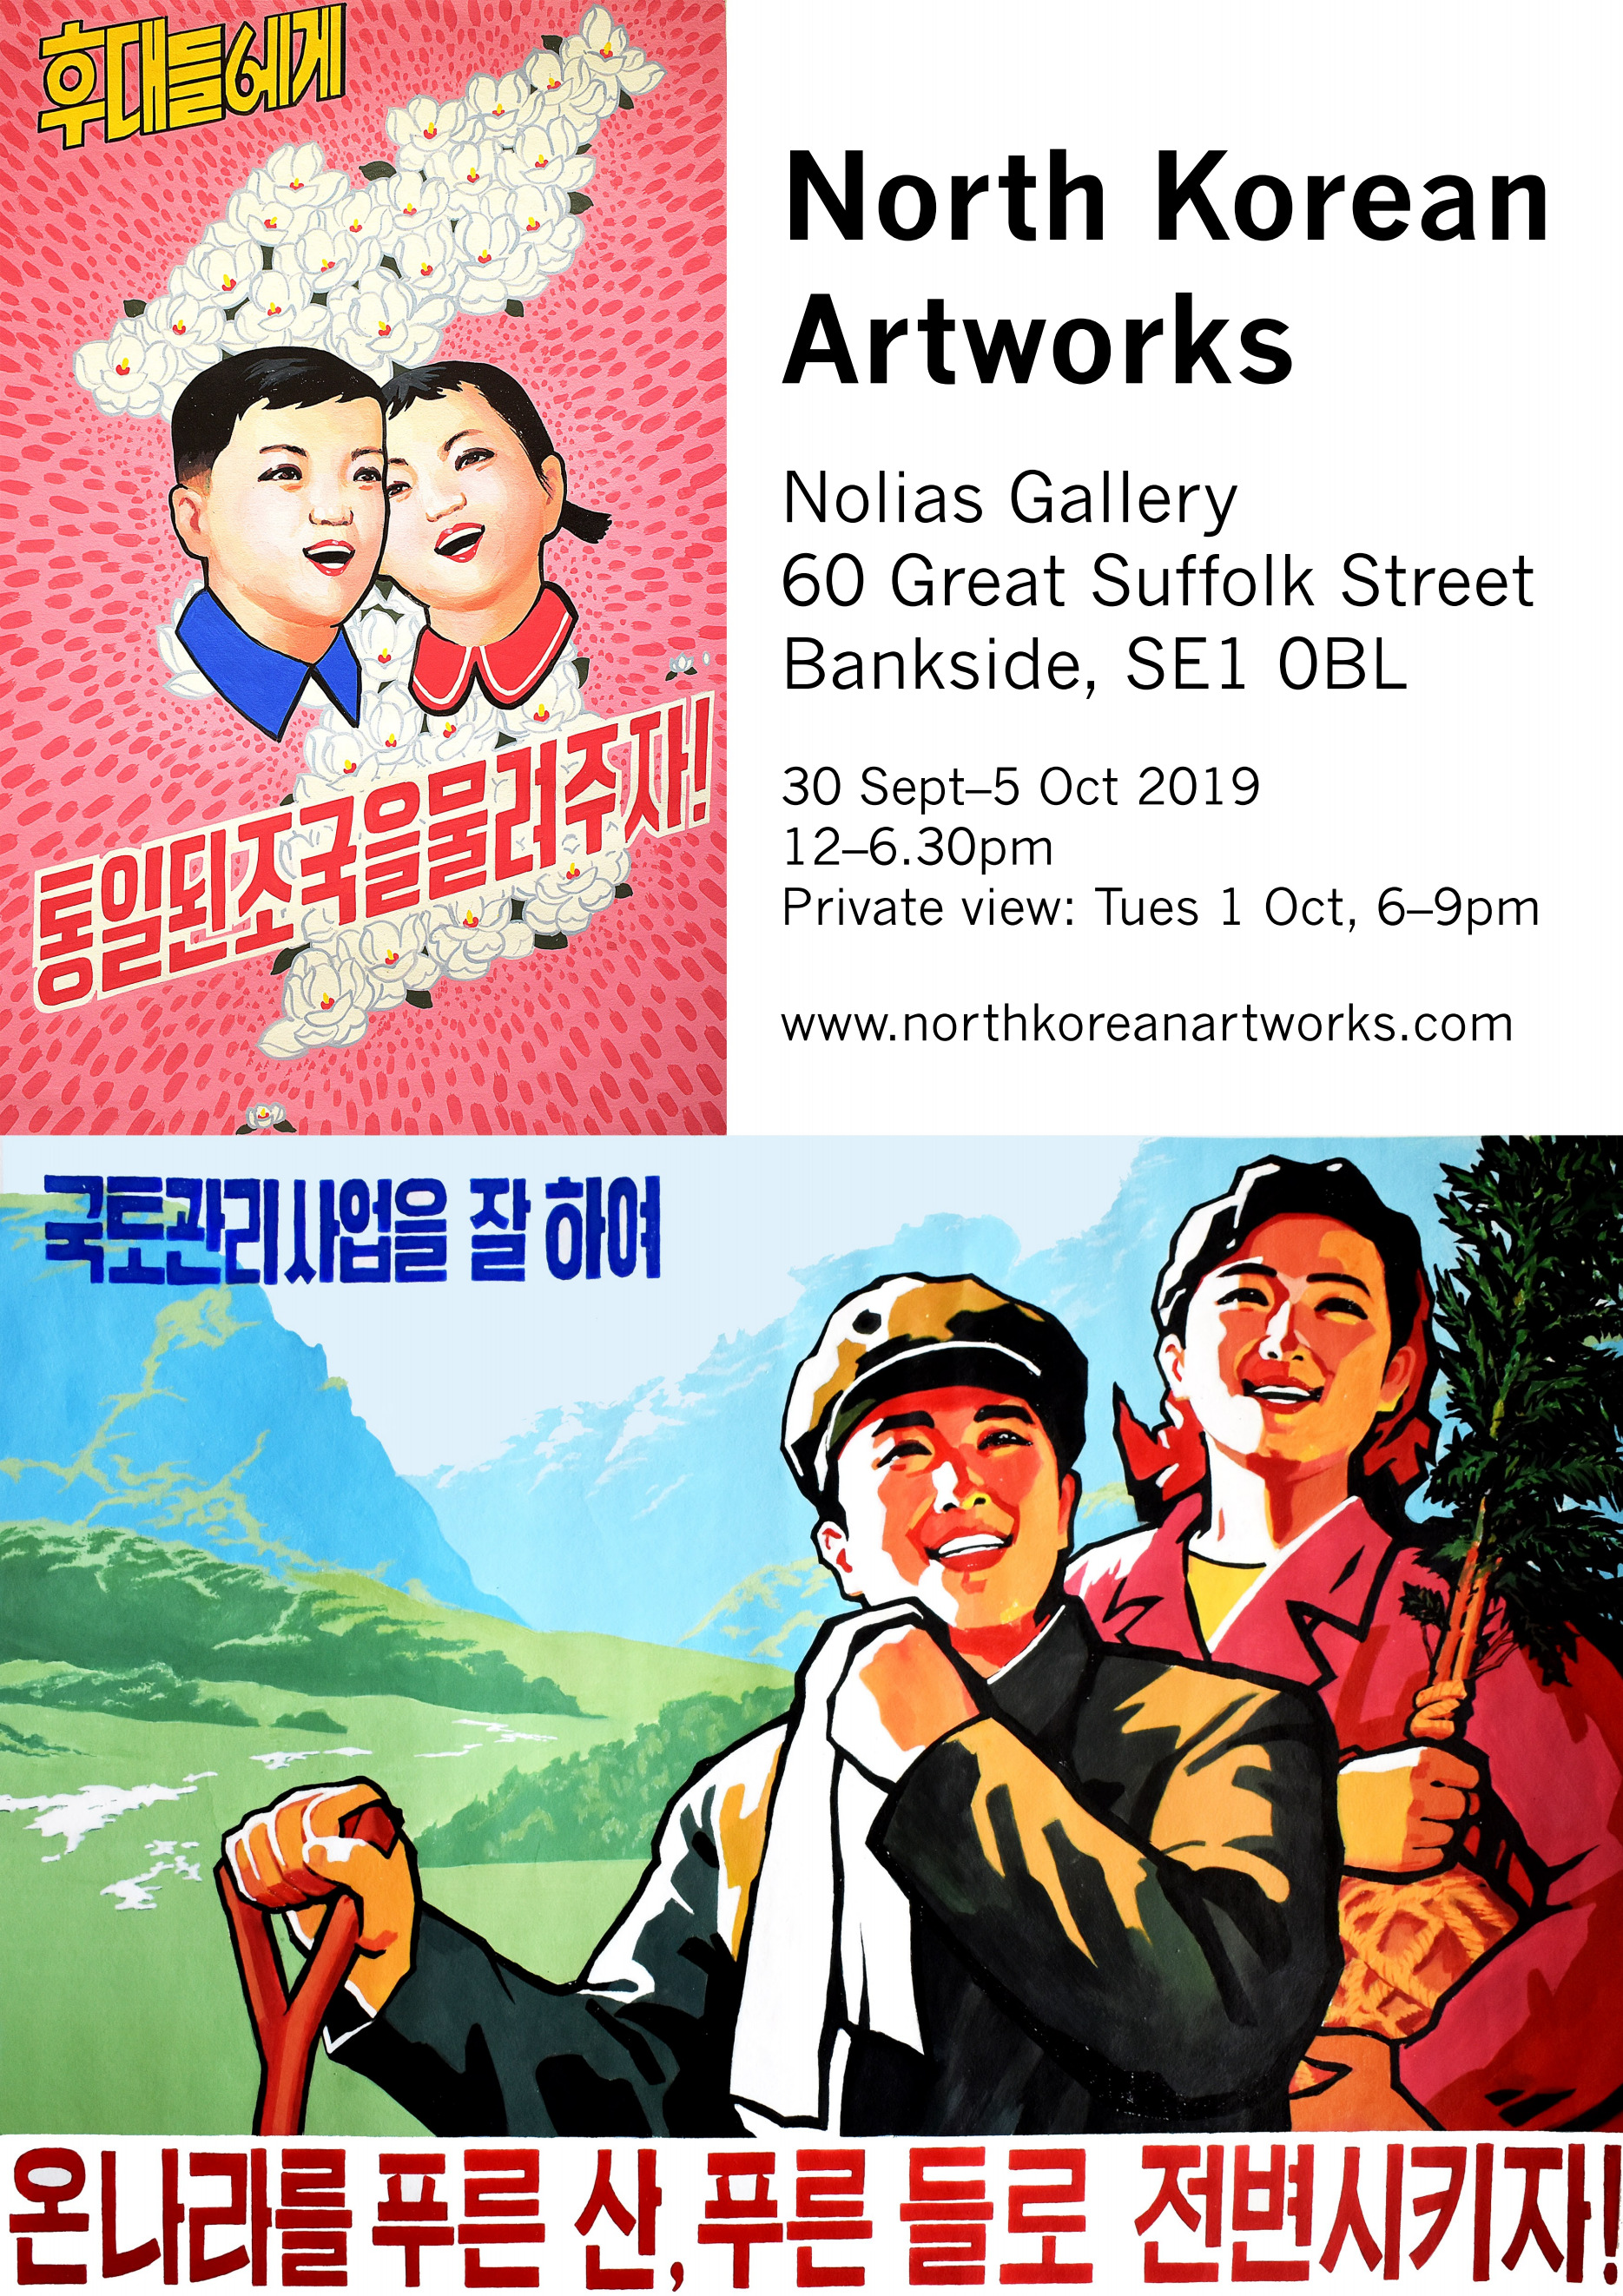 North Korean Artworks at Nolias Gallery